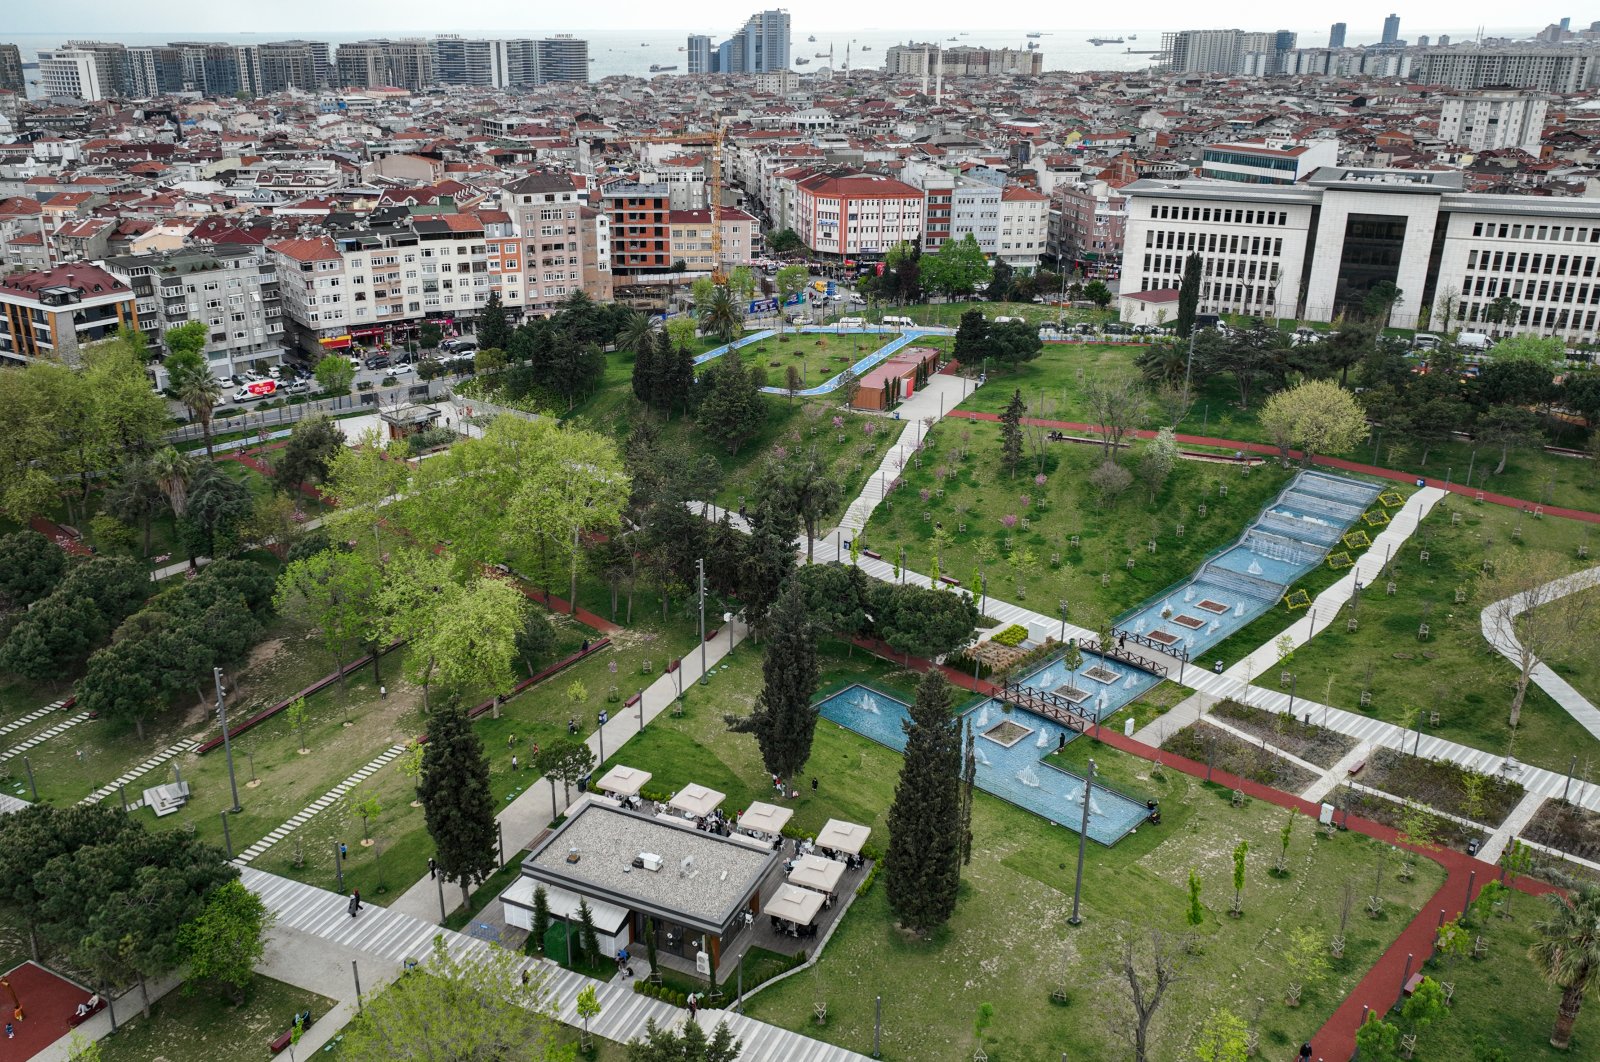 Taman umum Istanbul menanamkan kehijauan, relaksasi ke dalam kota yang semarak